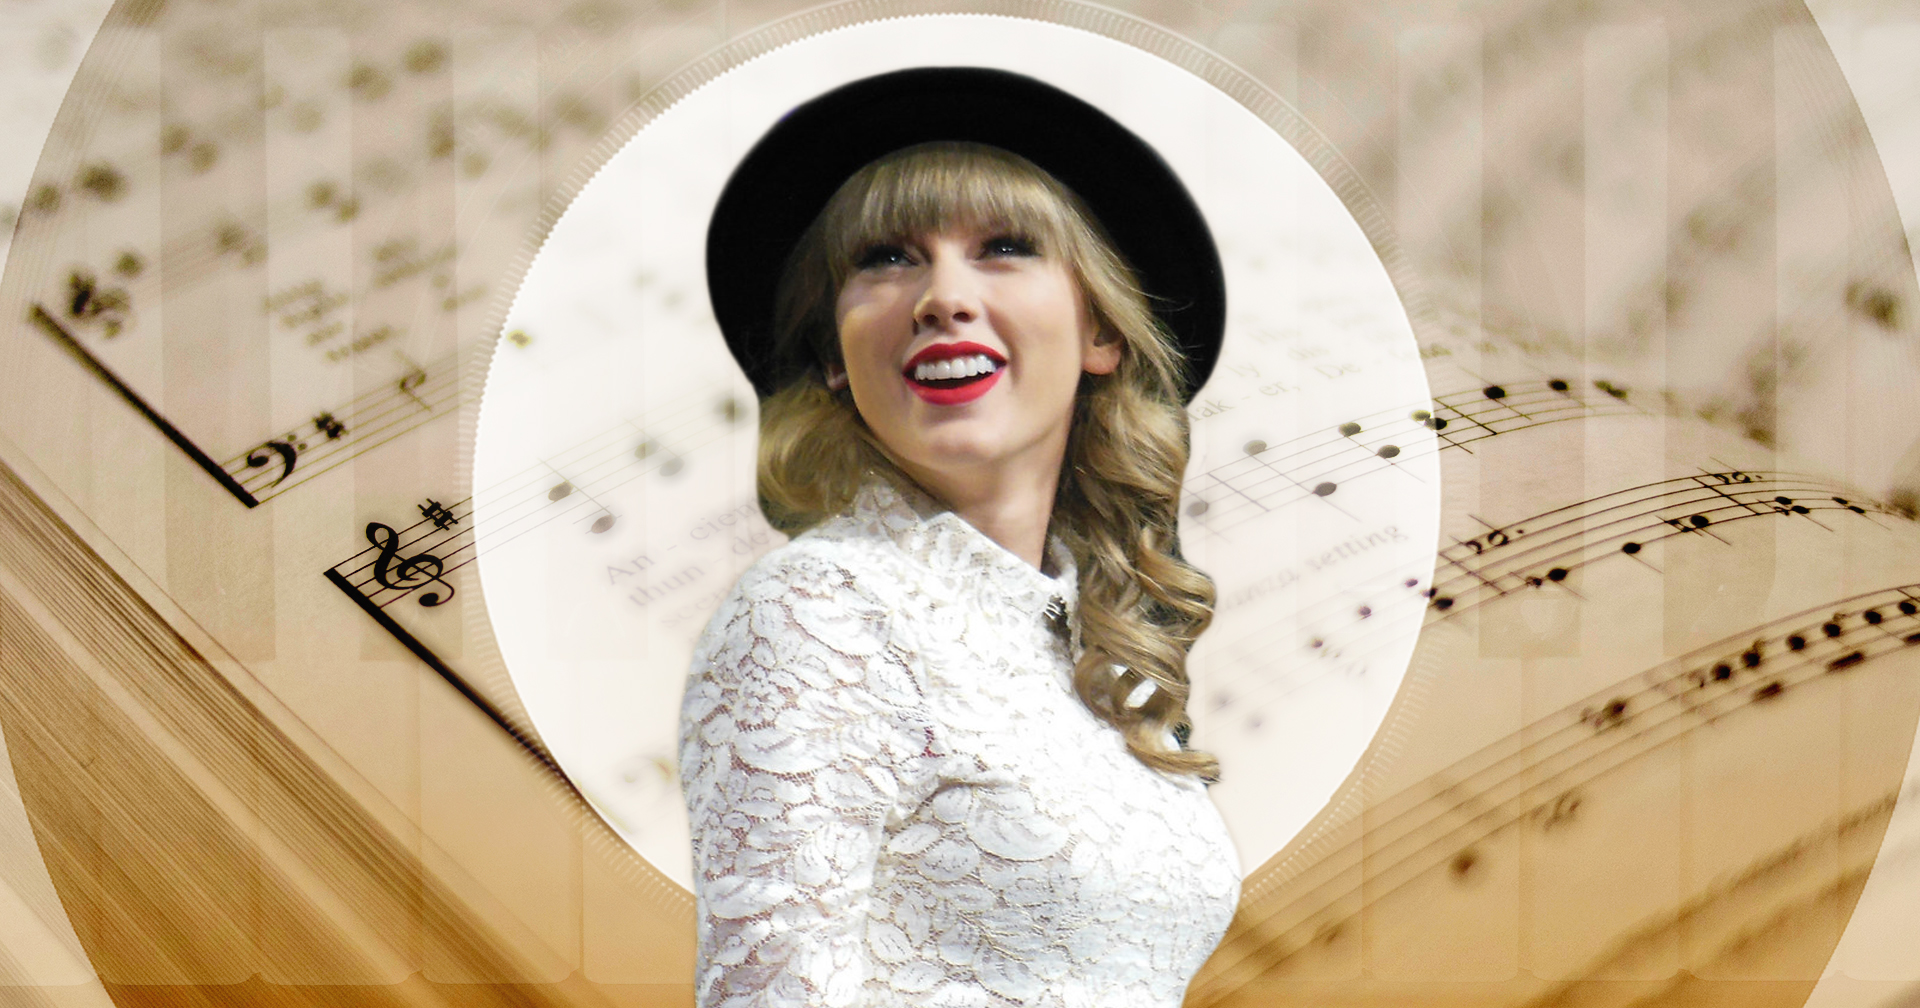 ม.เท็กซัส ประกาศหลักสูตรใหม่ วิชาศึกษาเพลง ‘Taylor Swift’